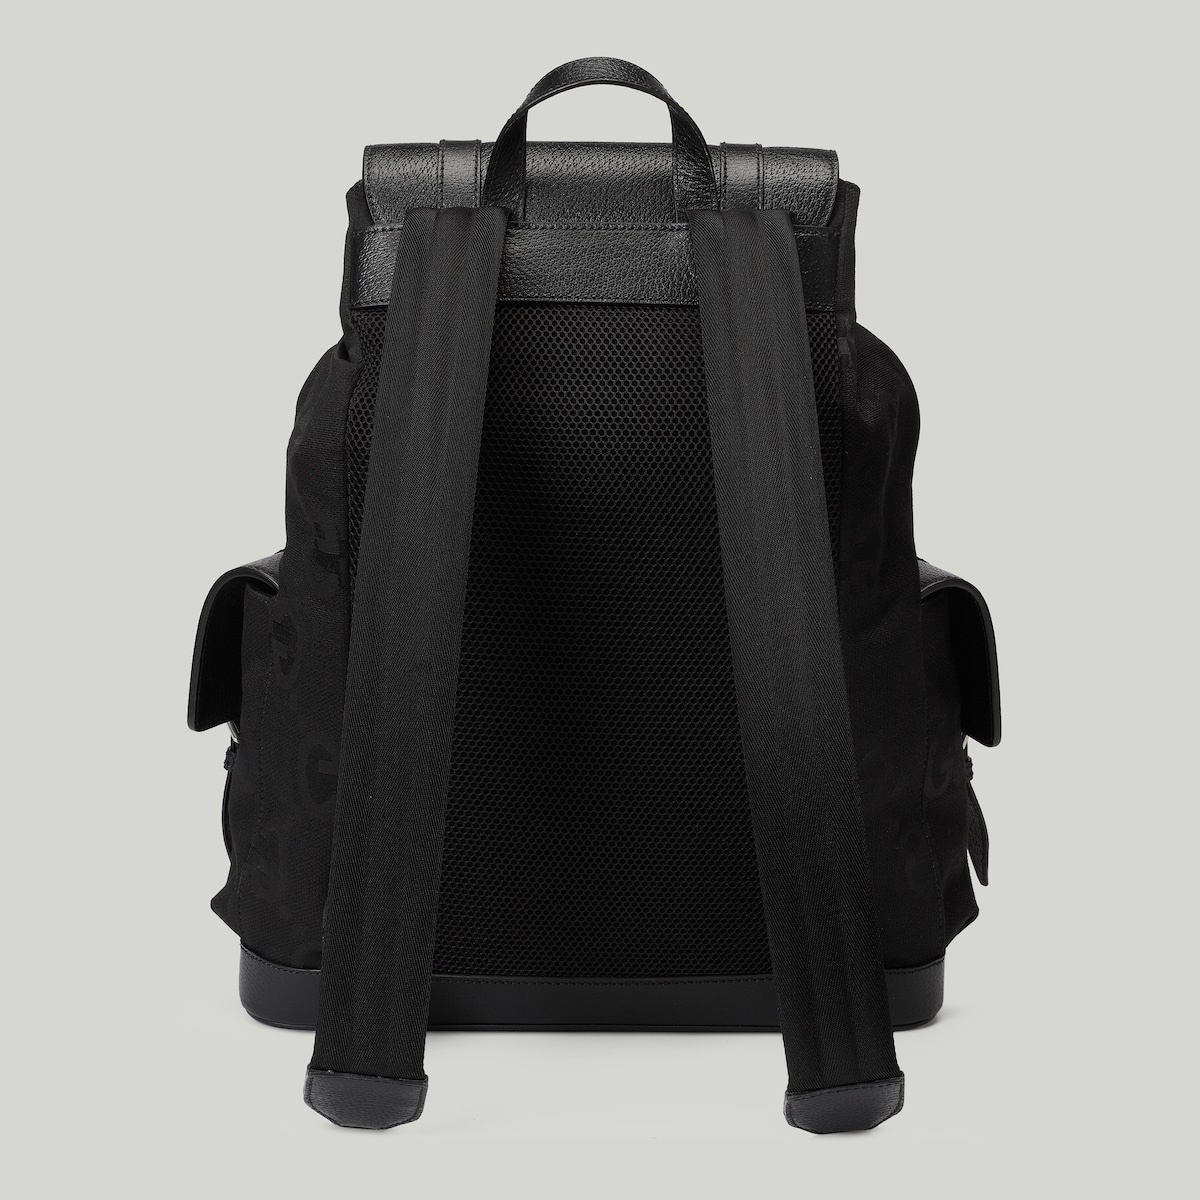 Jumbo GG backpack - 2